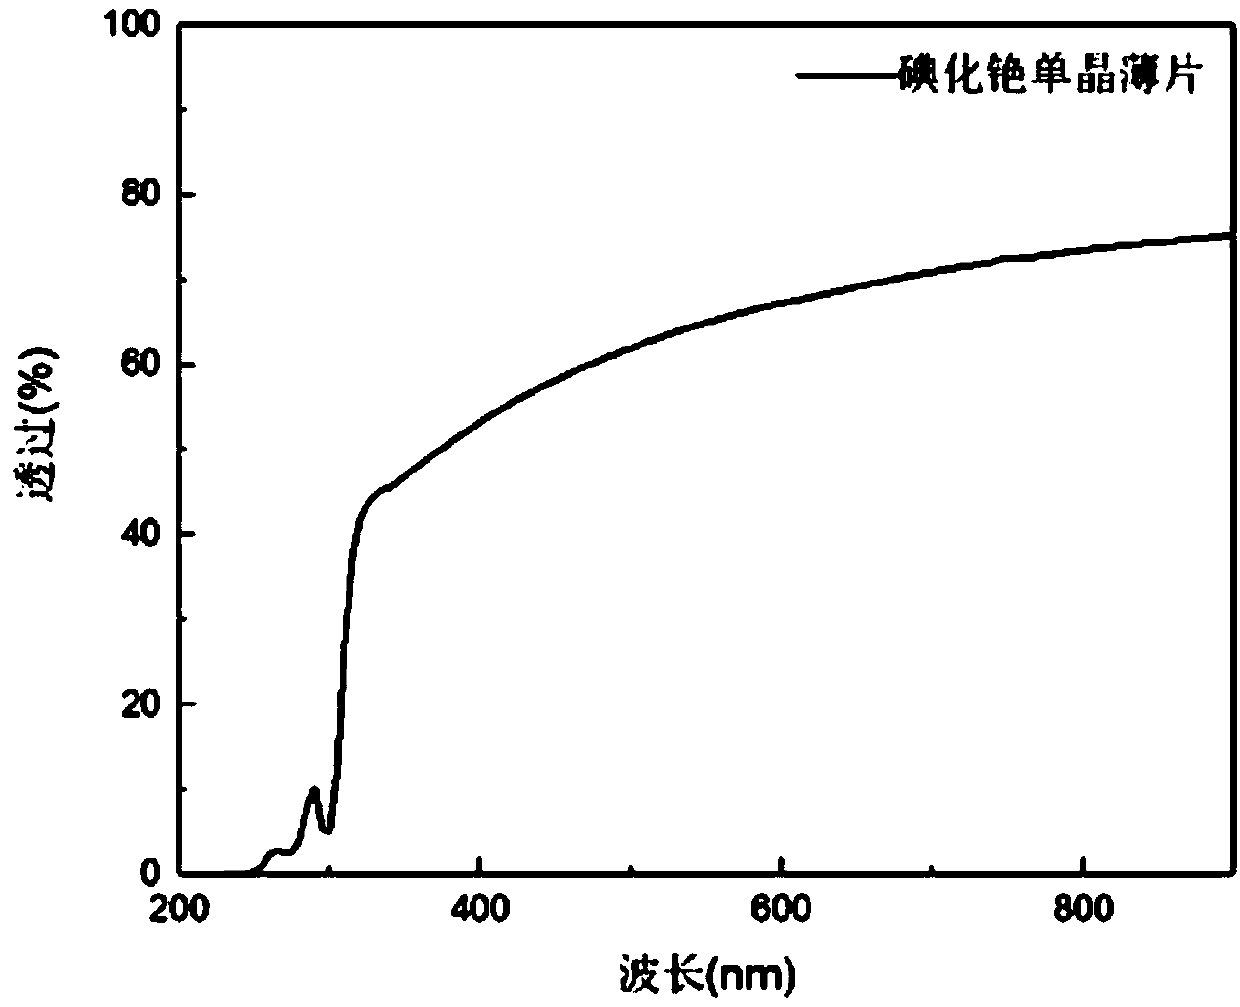 Cesium iodide single crystal wafer growth method based on solution